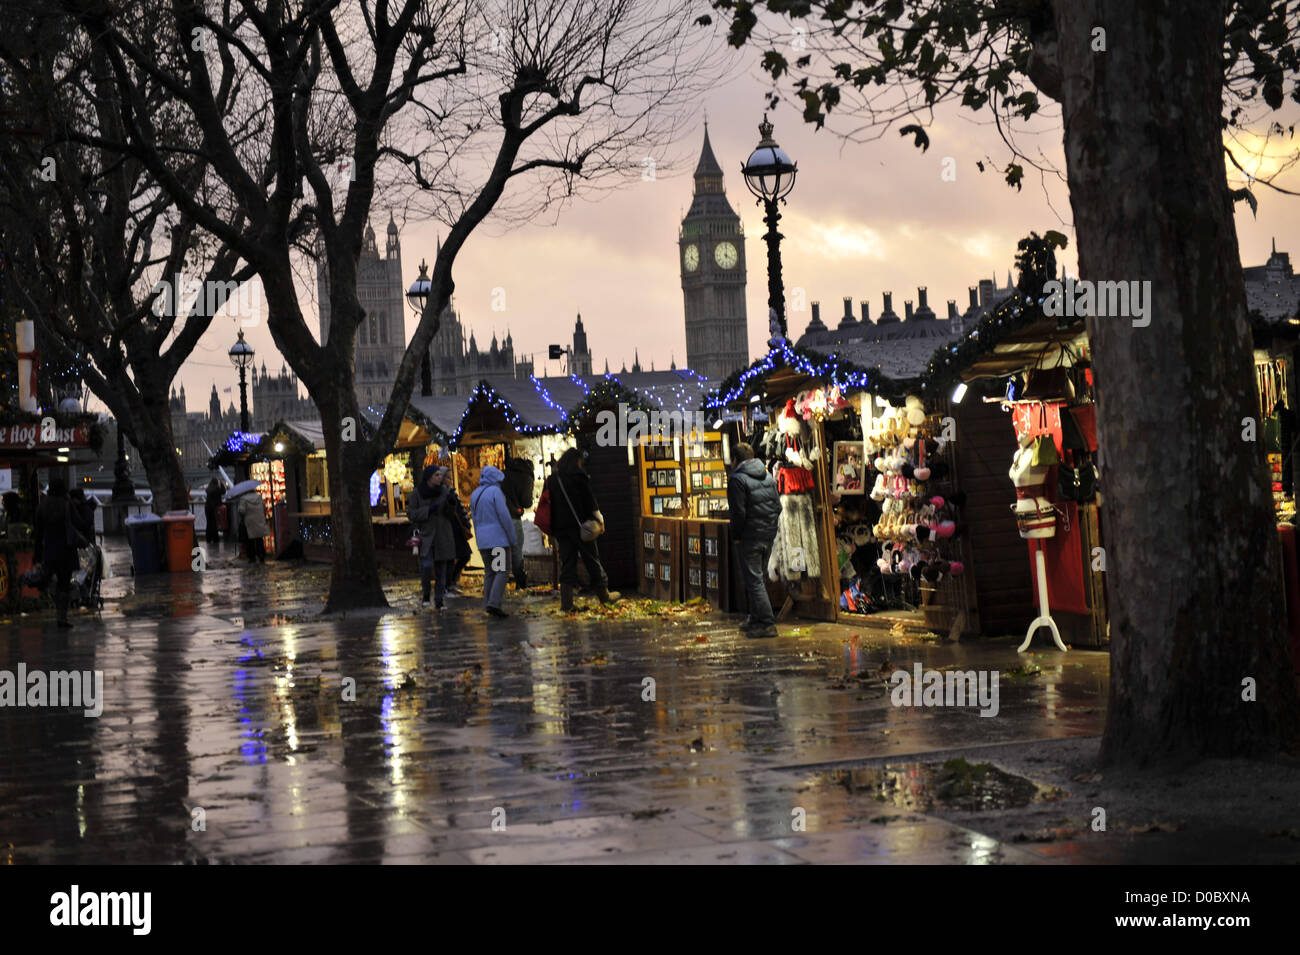 Londres, Royaume-Uni. 21 novembre 2012. Avec plus de pluie prévue à travers le Royaume-Uni, les traders sont en plein air pour les moments difficiles que nous nous sommes fixé pour les vacances de Noël en 2012 Banque D'Images